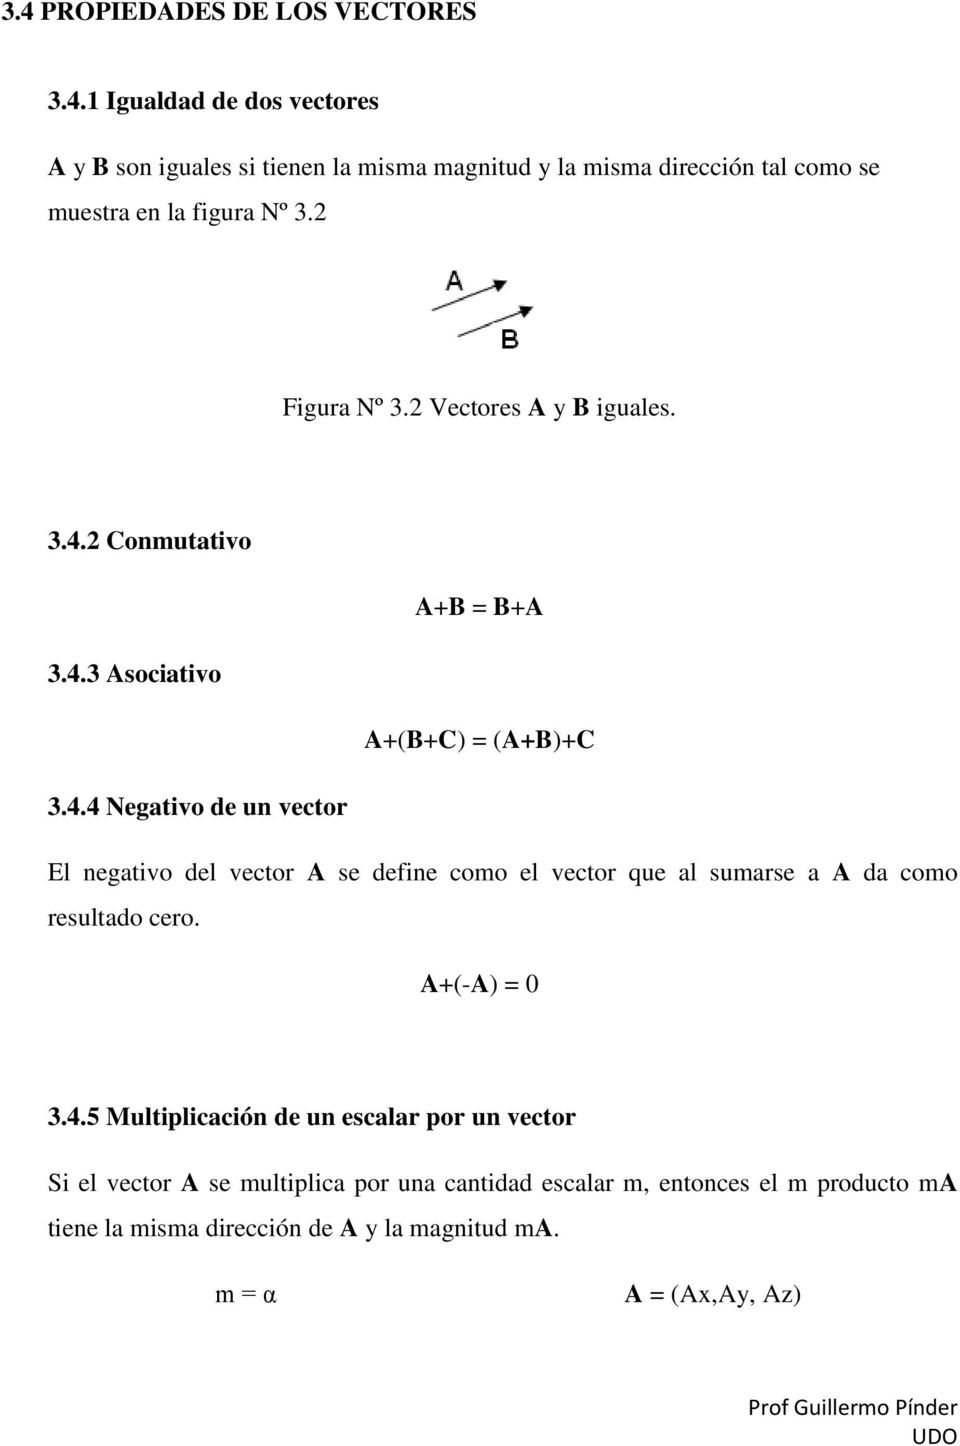 2 Conmutativo A+B = B+A 3.4.3 Asociativo A+(B+C) = (A+B)+C 3.4.4 Negativo de un vector El negativo del vector A se define como el vector que al sumarse a A da como resultado cero.